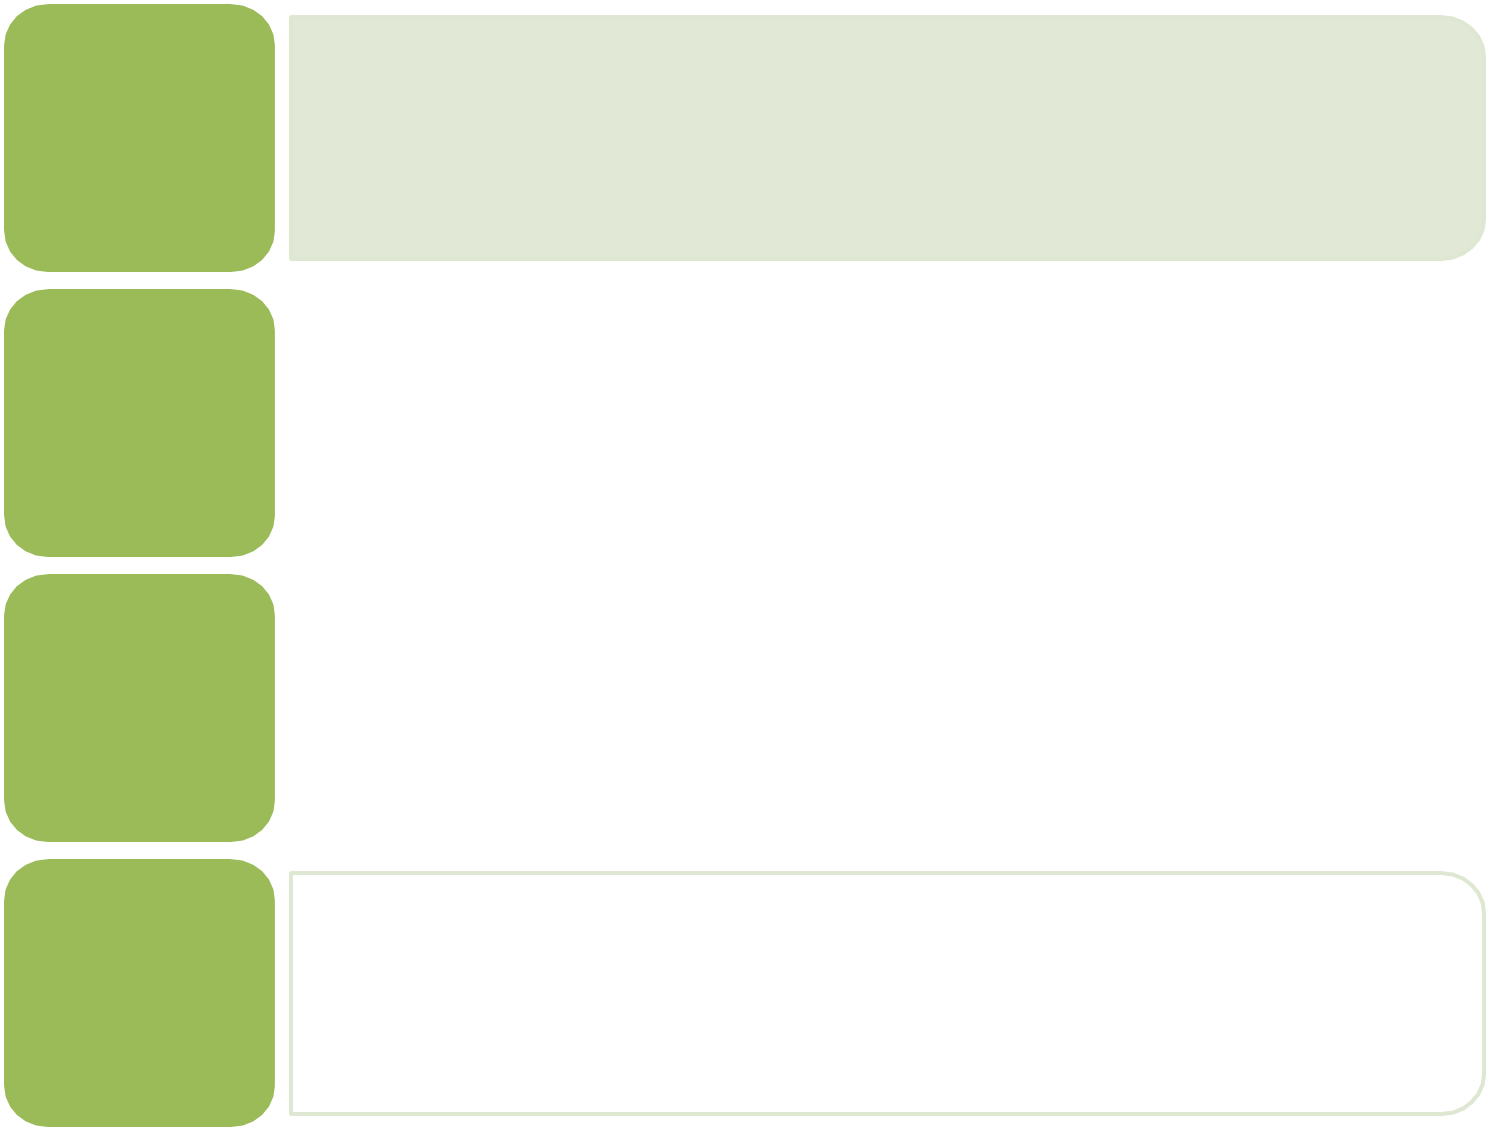 Esta figura muestra 3 parábola de apertura hacia arriba en el plano de la coordenada x y. El medio es la gráfica de f de x igual a x cuadrado tiene un vértice de (0, 0). Otros puntos de la curva se ubican en (negativo 1, 1) y (1, 1). La parábola superior se ha movido hacia arriba 2 unidades, y la inferior se ha desplazado hacia abajo 2 unidades.